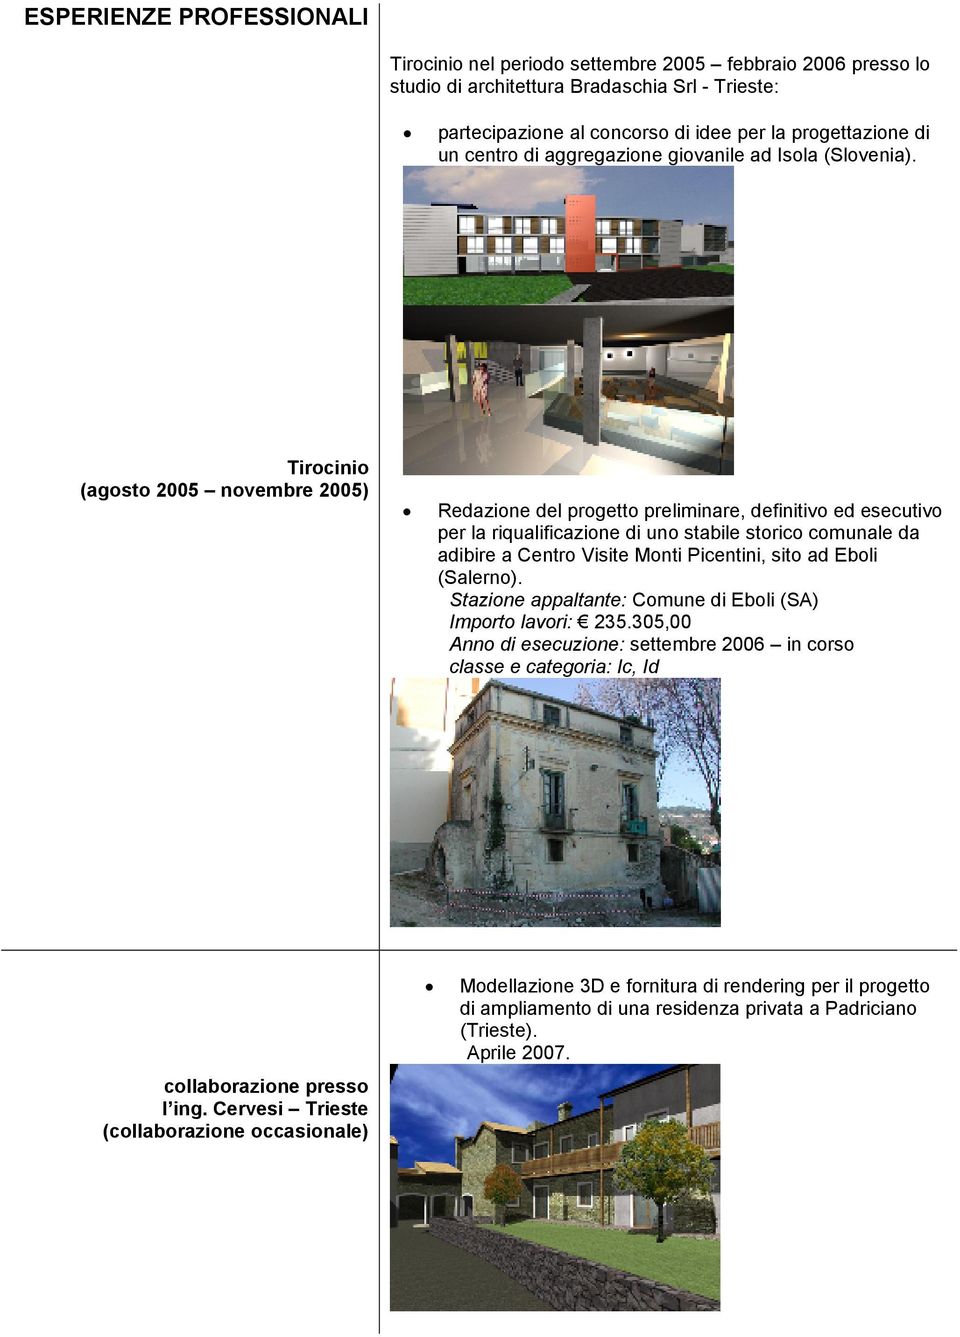 Tirocinio (agosto 2005 novembre 2005) Redazione del progetto preliminare, definitivo ed esecutivo per la riqualificazione di uno stabile storico comunale da adibire a Centro Visite Monti Picentini,